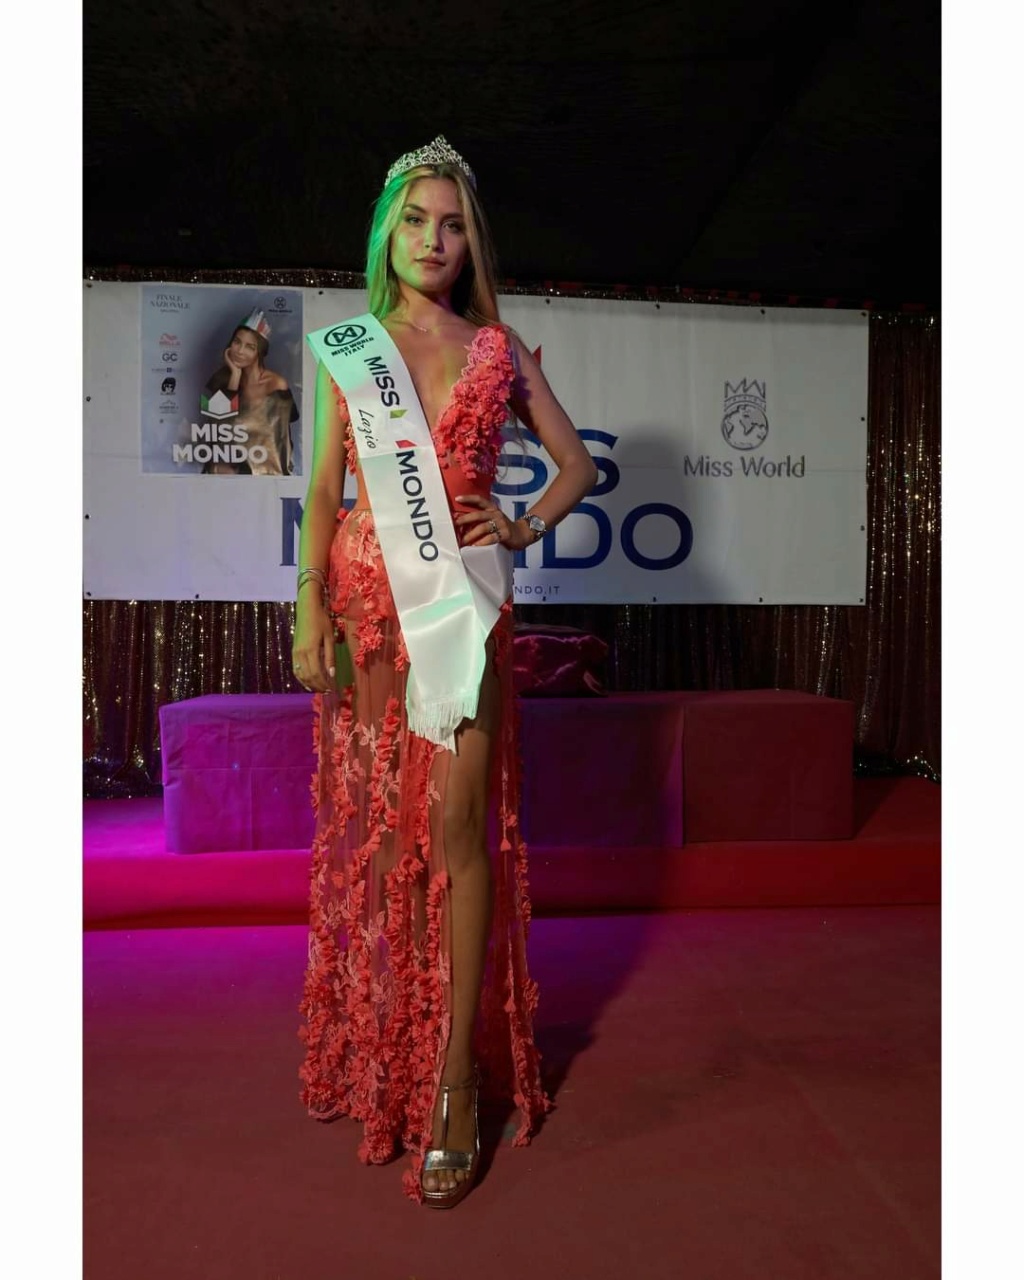 Miss Mondo Italia 2020/2021 is Claudia Motta - Lazio Fb_i2604